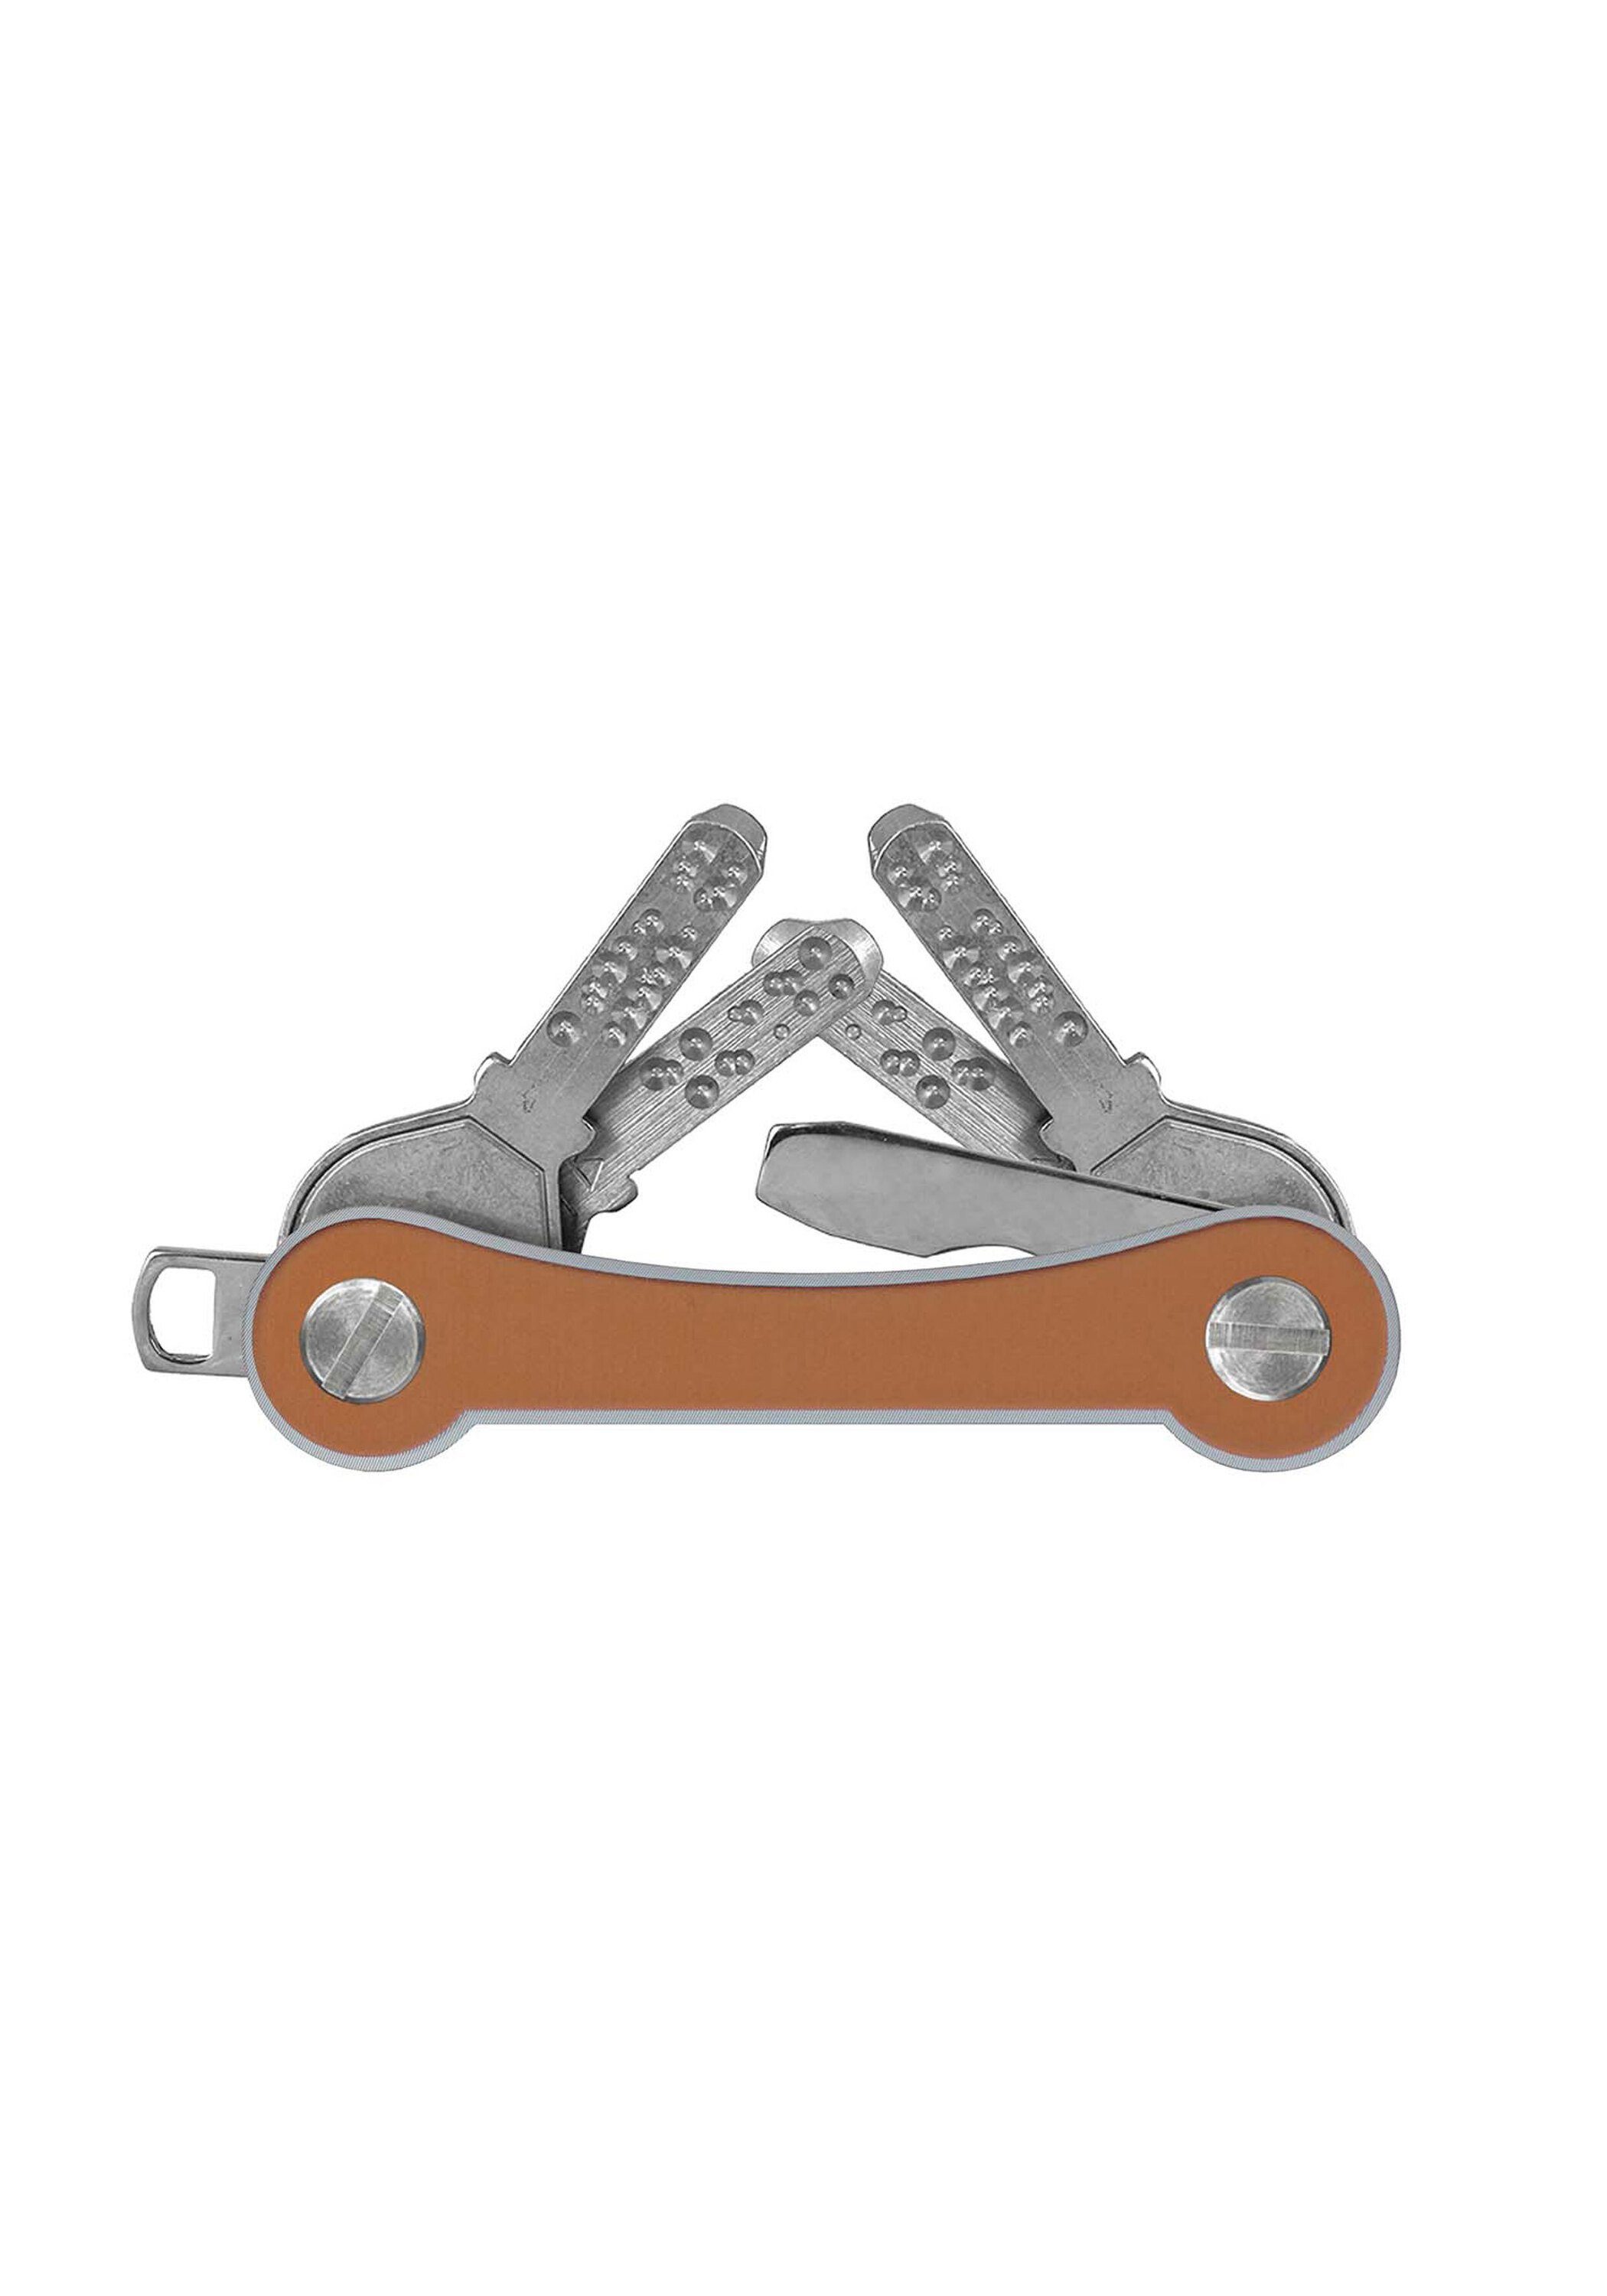 Aluminium Made frame, SWISS Schlüsselanhänger goldfarben keycabins